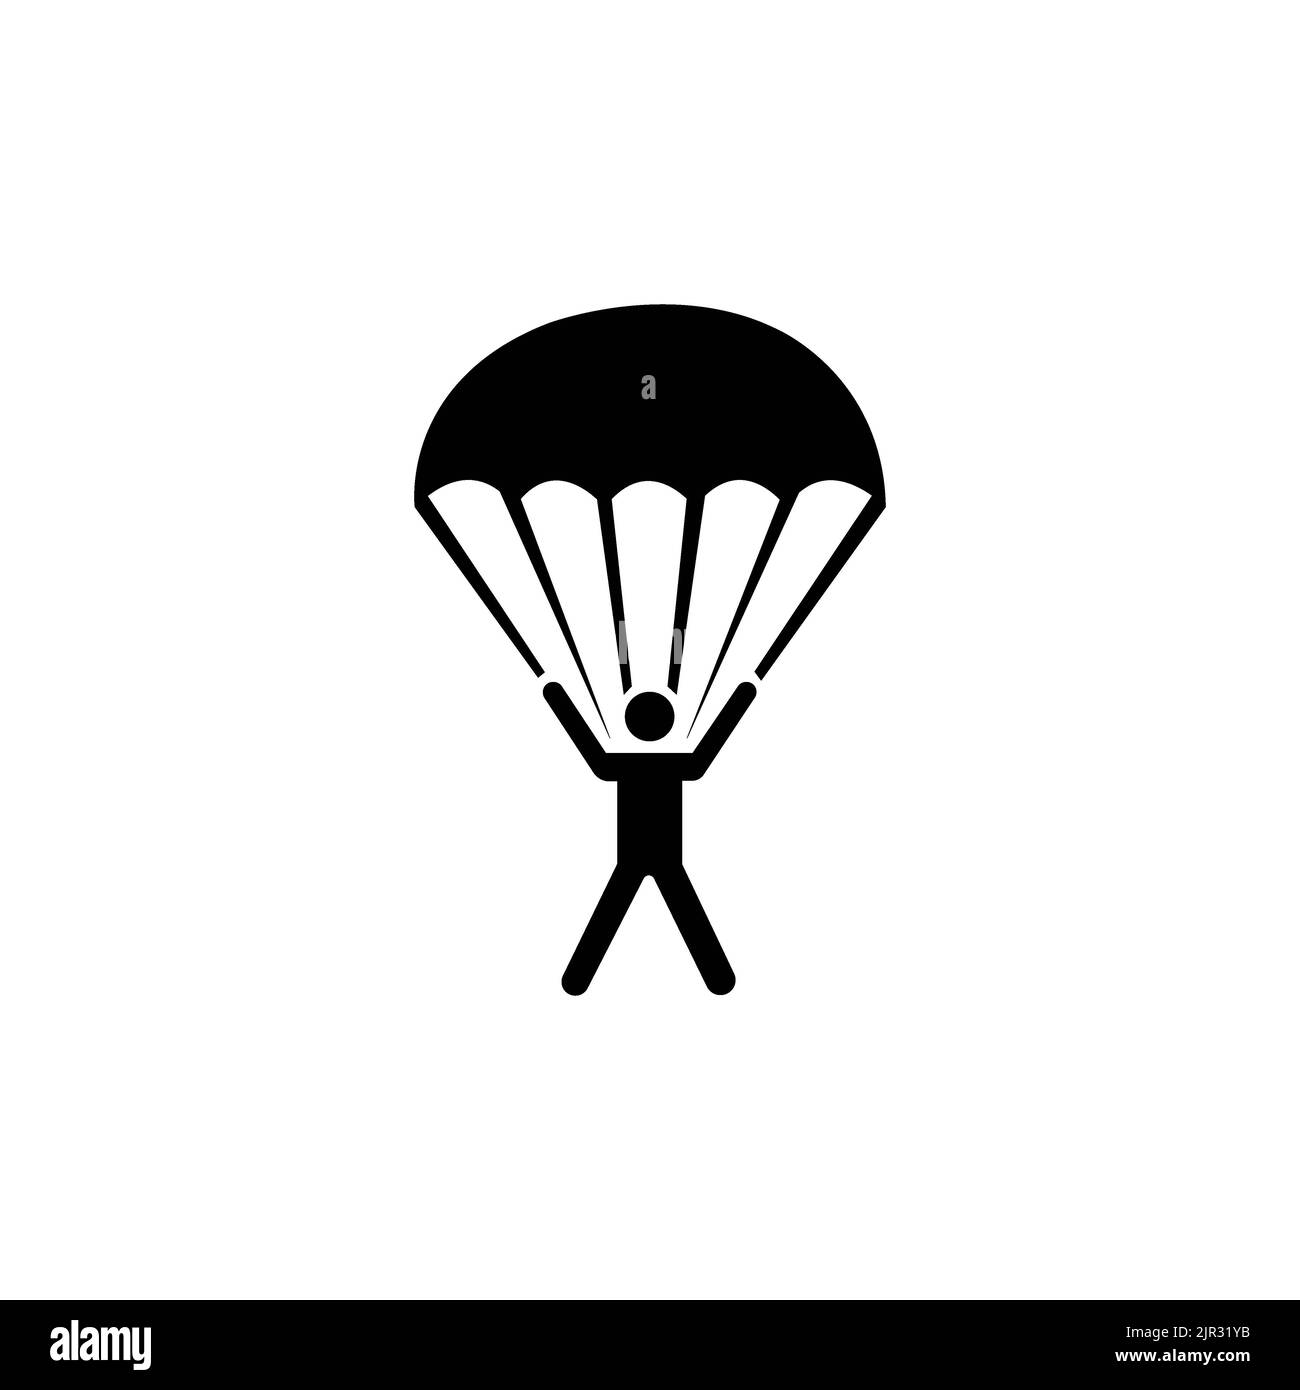 parachute icon logo vector design template Stock Photo